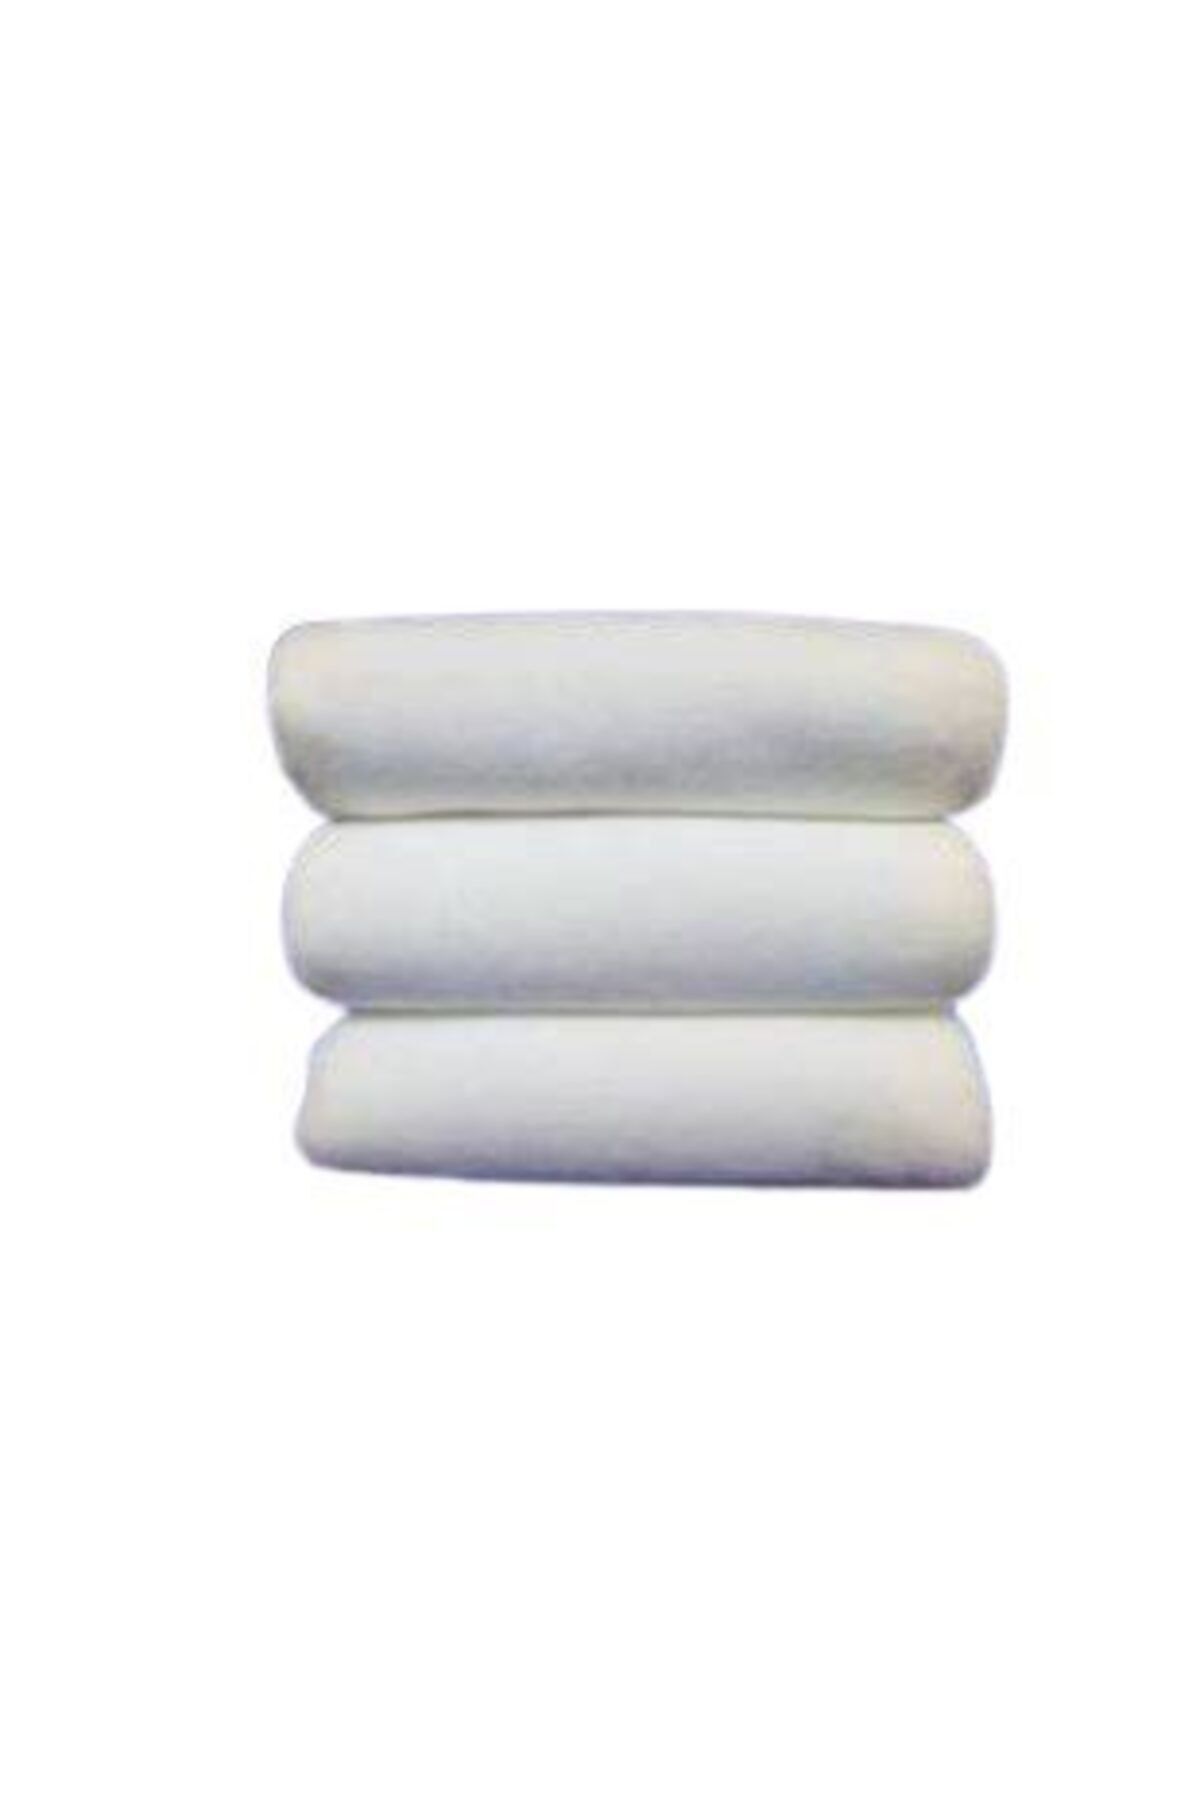 Bol Ticaret Tekstil 12 Adet Outlet Beyaz Mikrofiber Kuaför Havlusu Saç Boyası Tutmayan 50 X 90 Cm